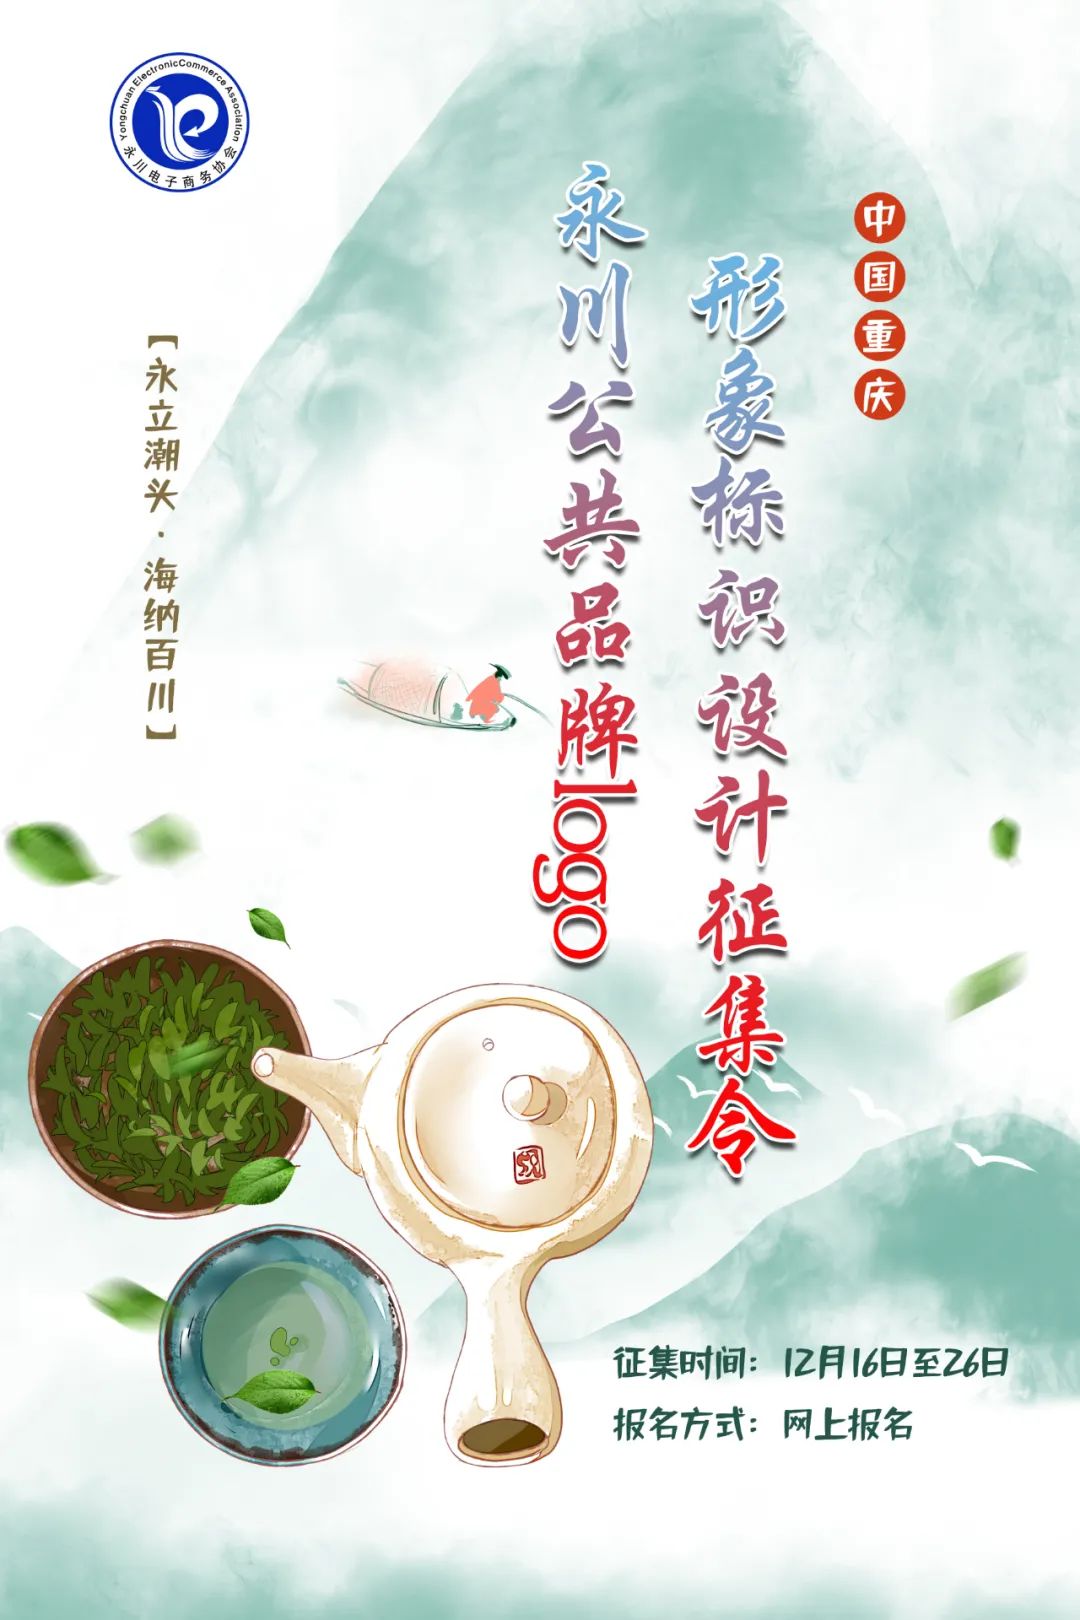 重庆永川公共品牌logo形象标识设计征集开始啦(奖金2000) 